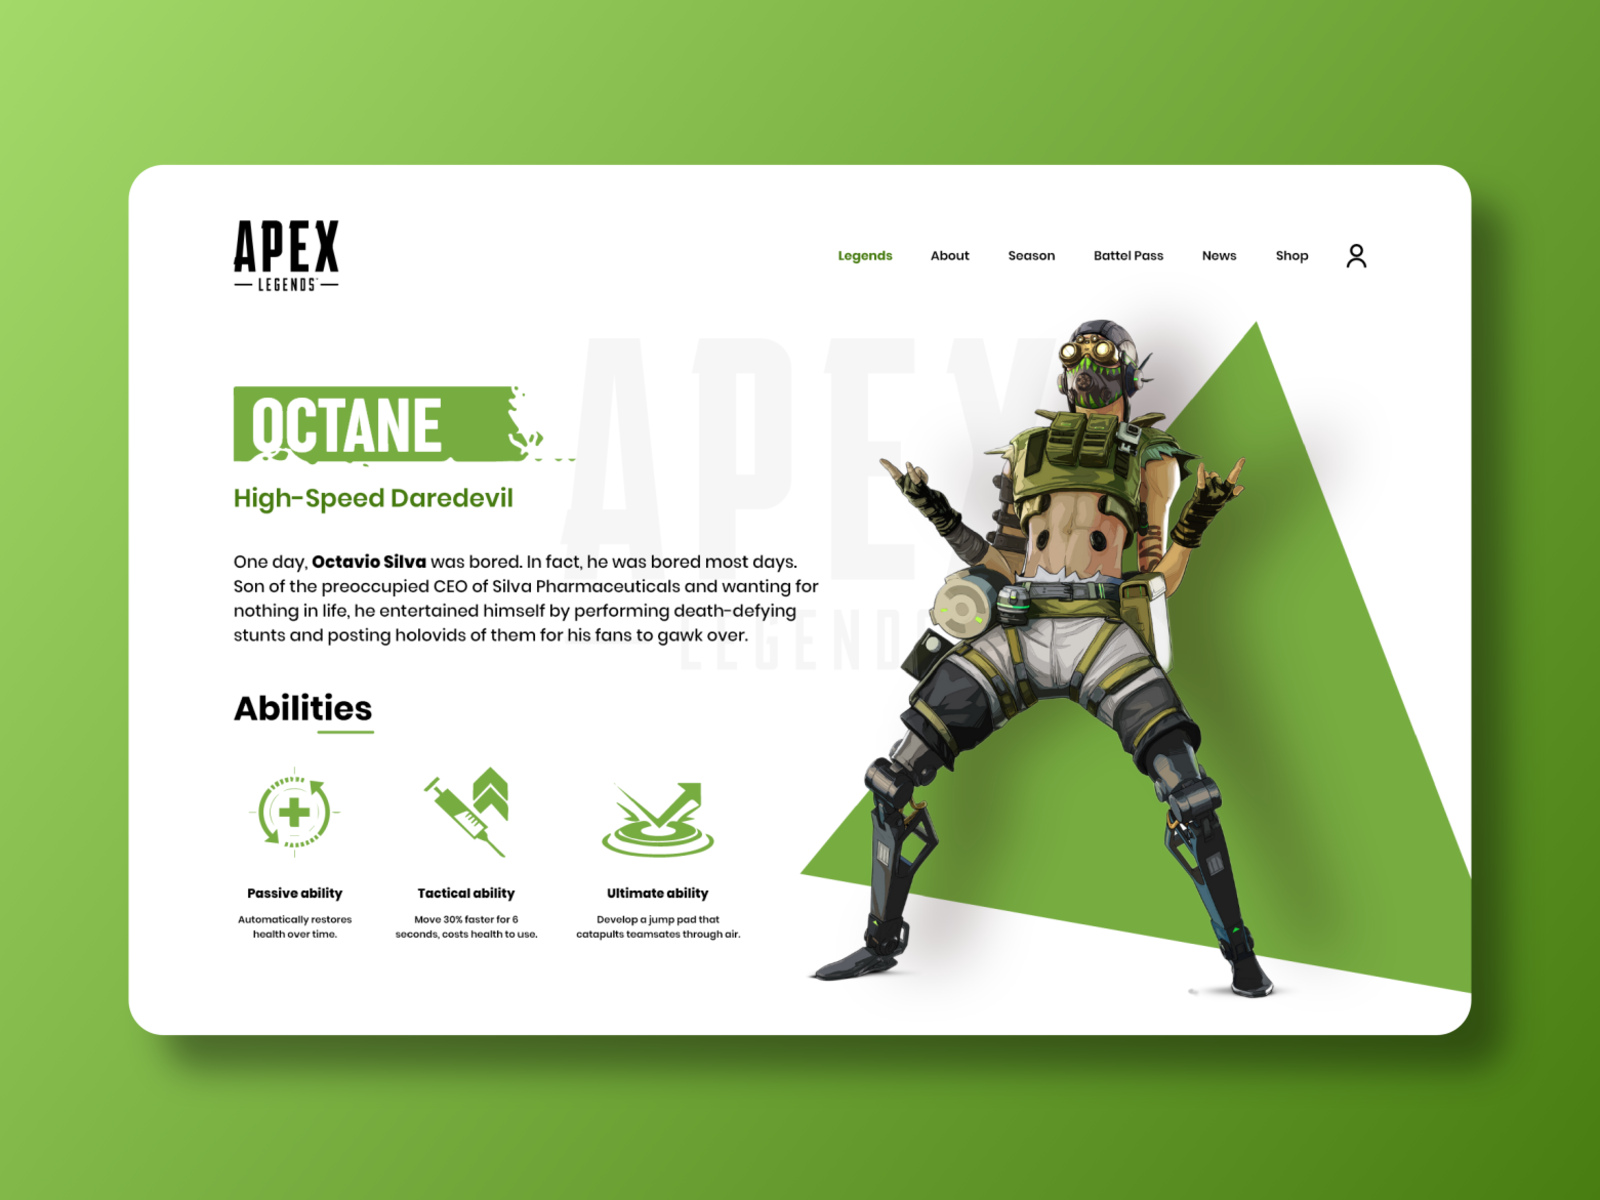 Apex legends - Octane apex legends art bold color design flat graphic design illustration minimal ui ux website